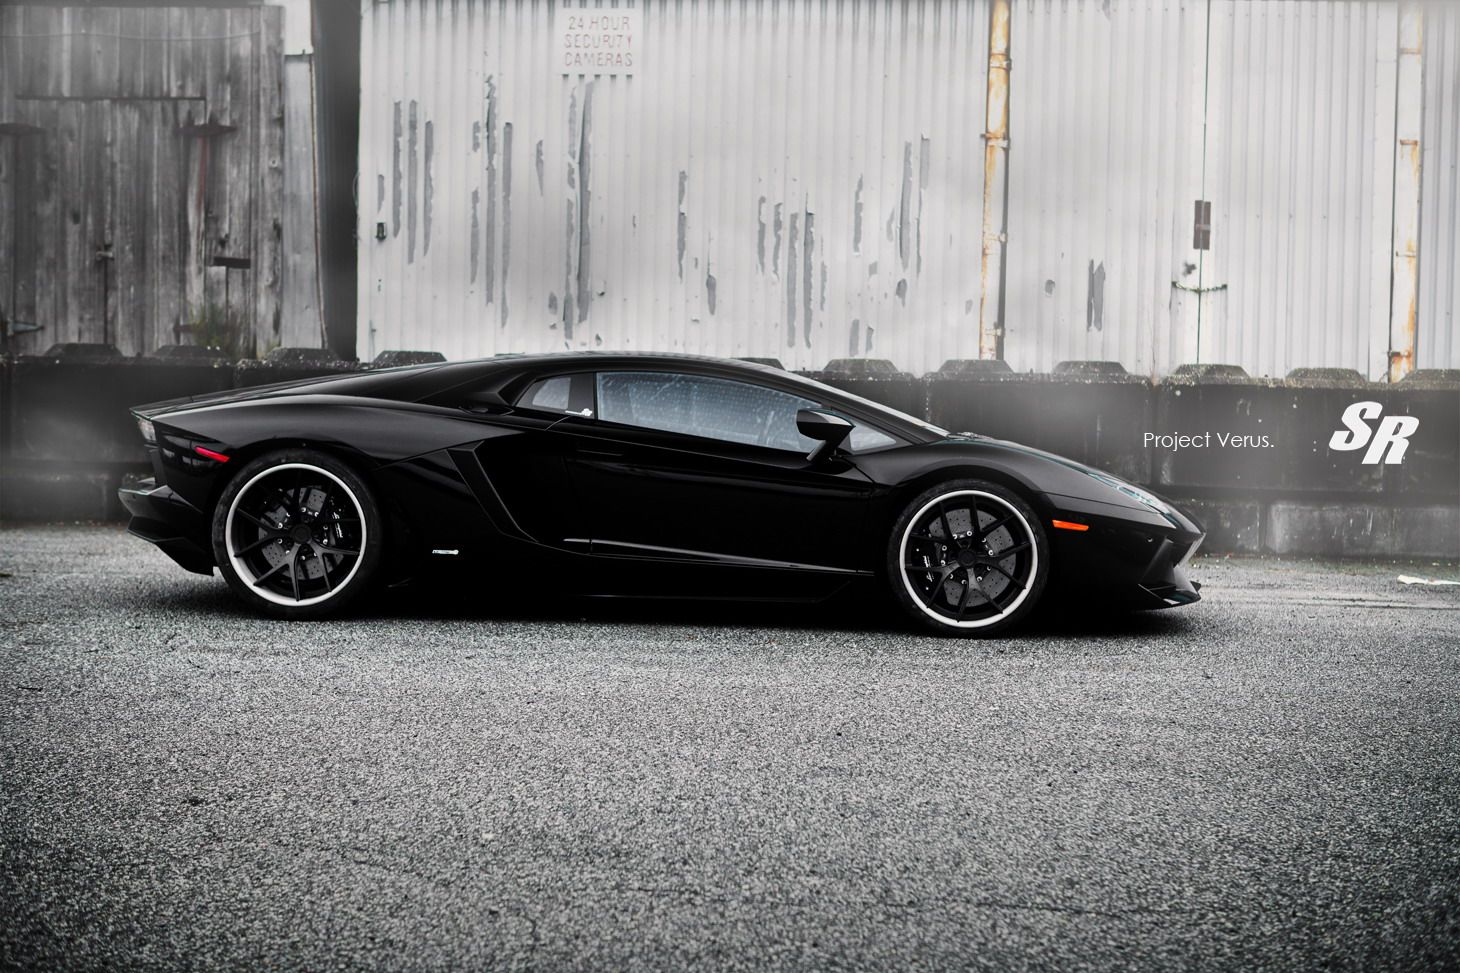 2012 Lamborghini Aventador Verus by SR Auto Group